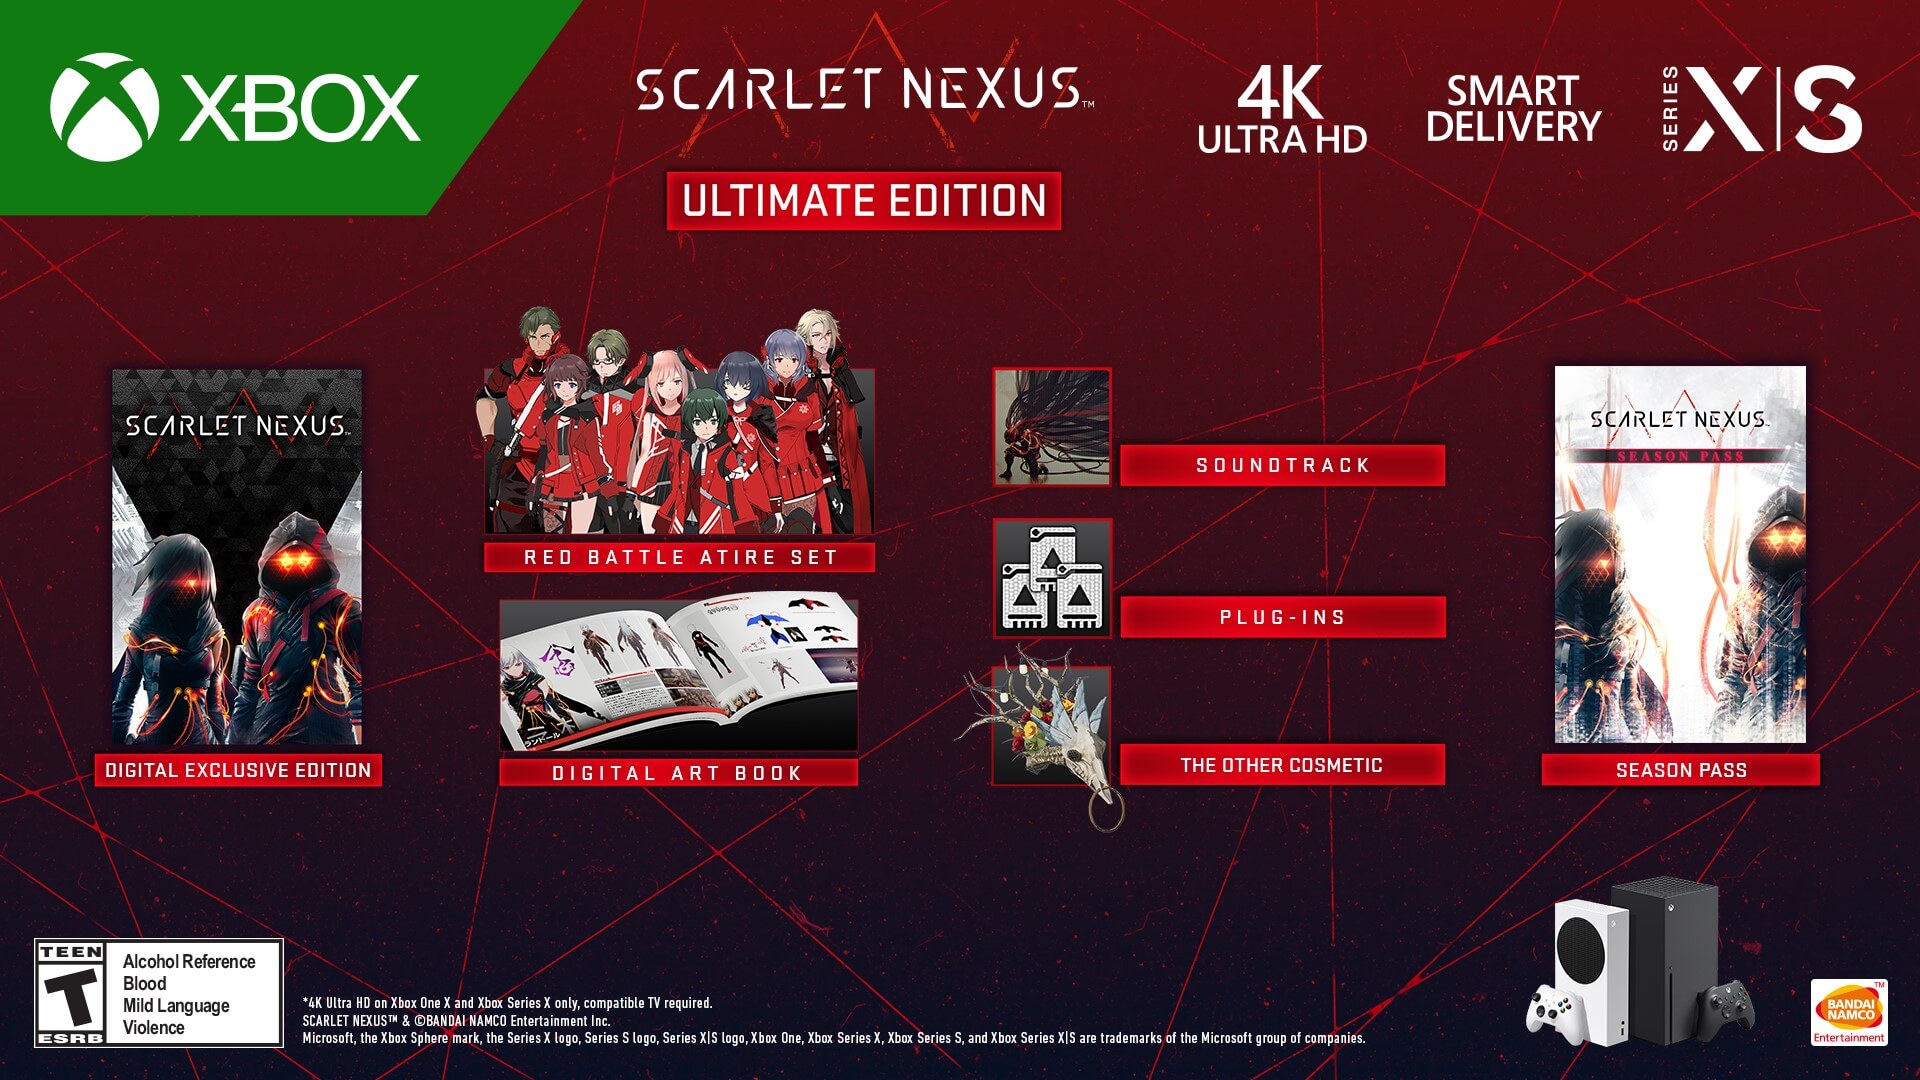 Scarlet Nexus: Season 1 Part 2 [Blu-ray] - Best Buy